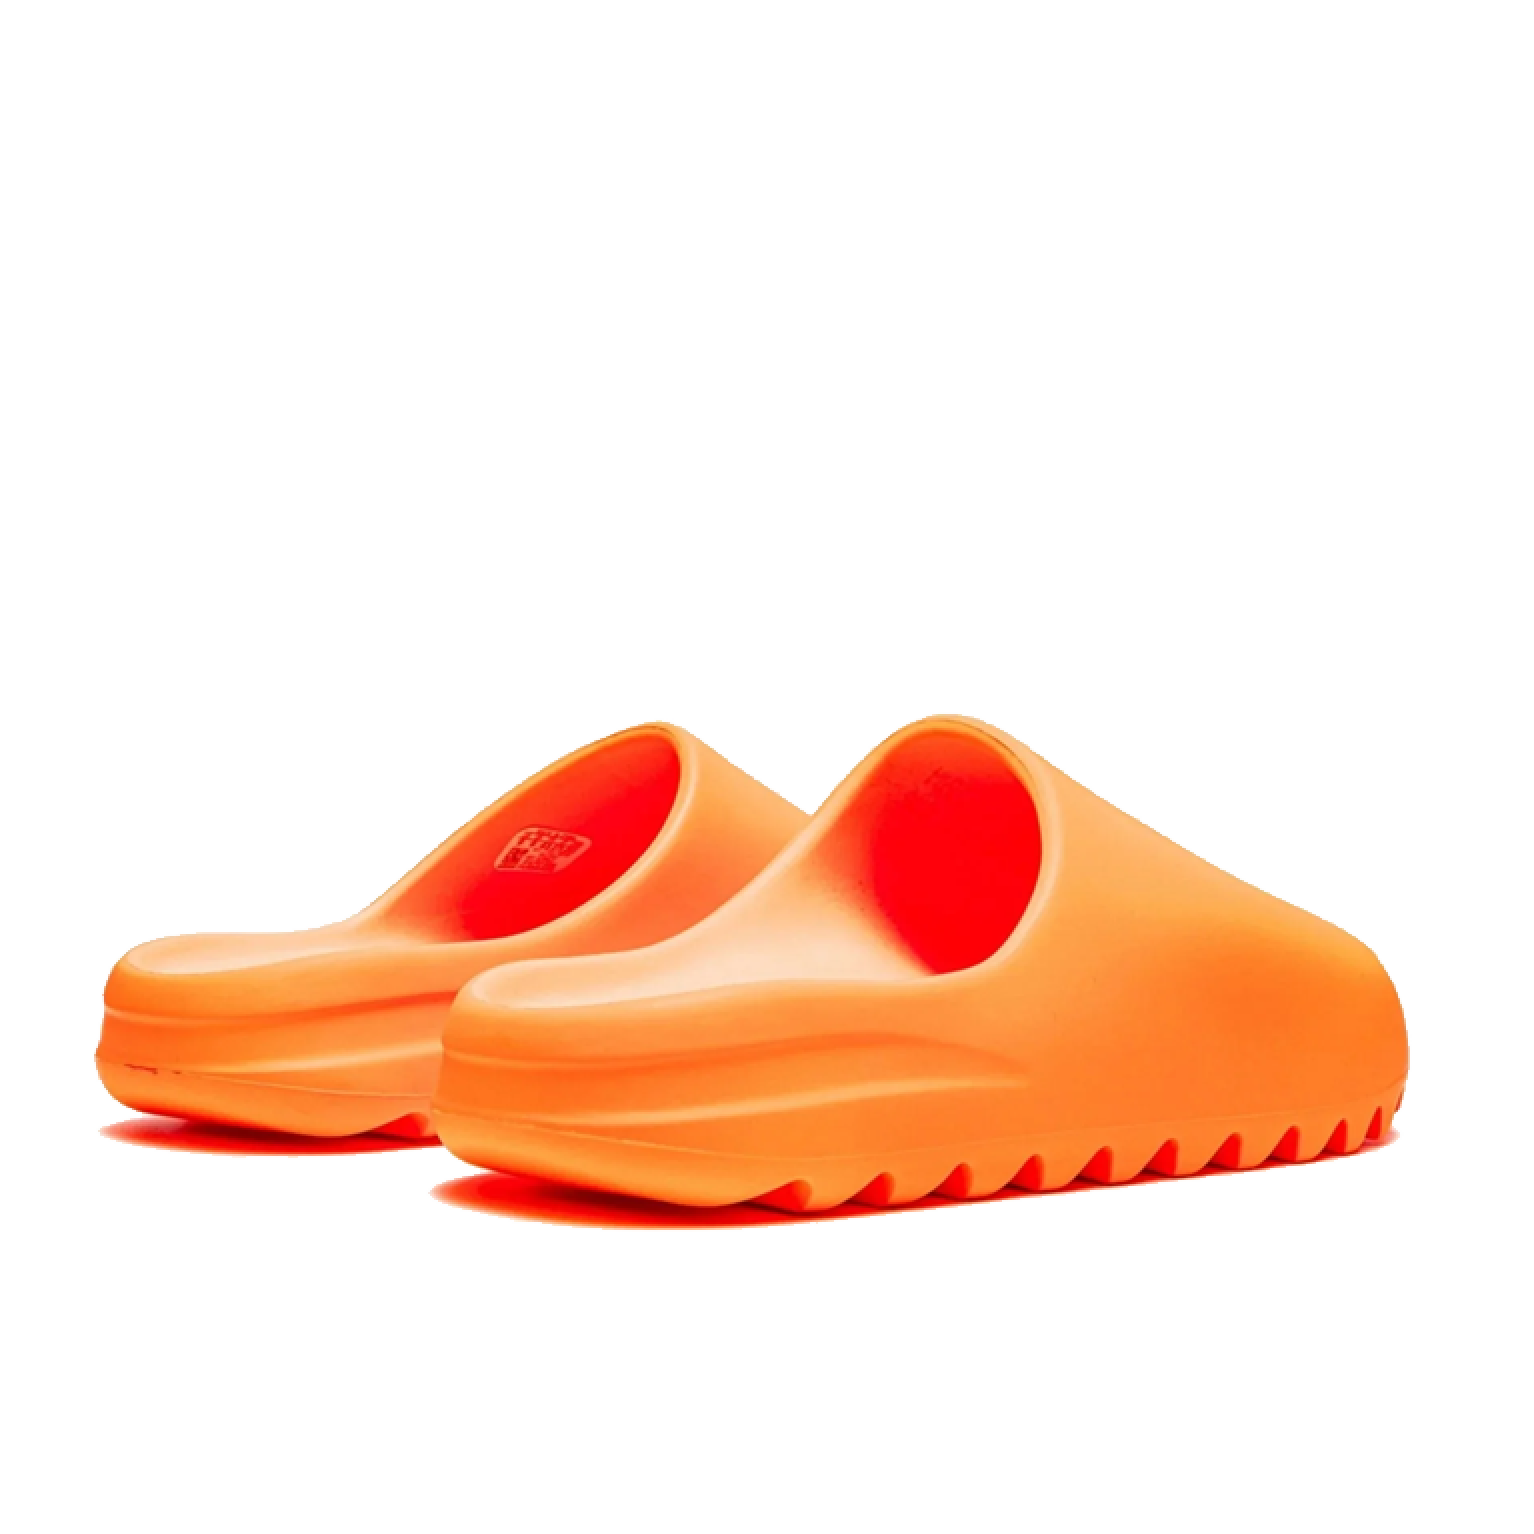 Шлепанцы Adidas Yeezy Slide Enflame Orange